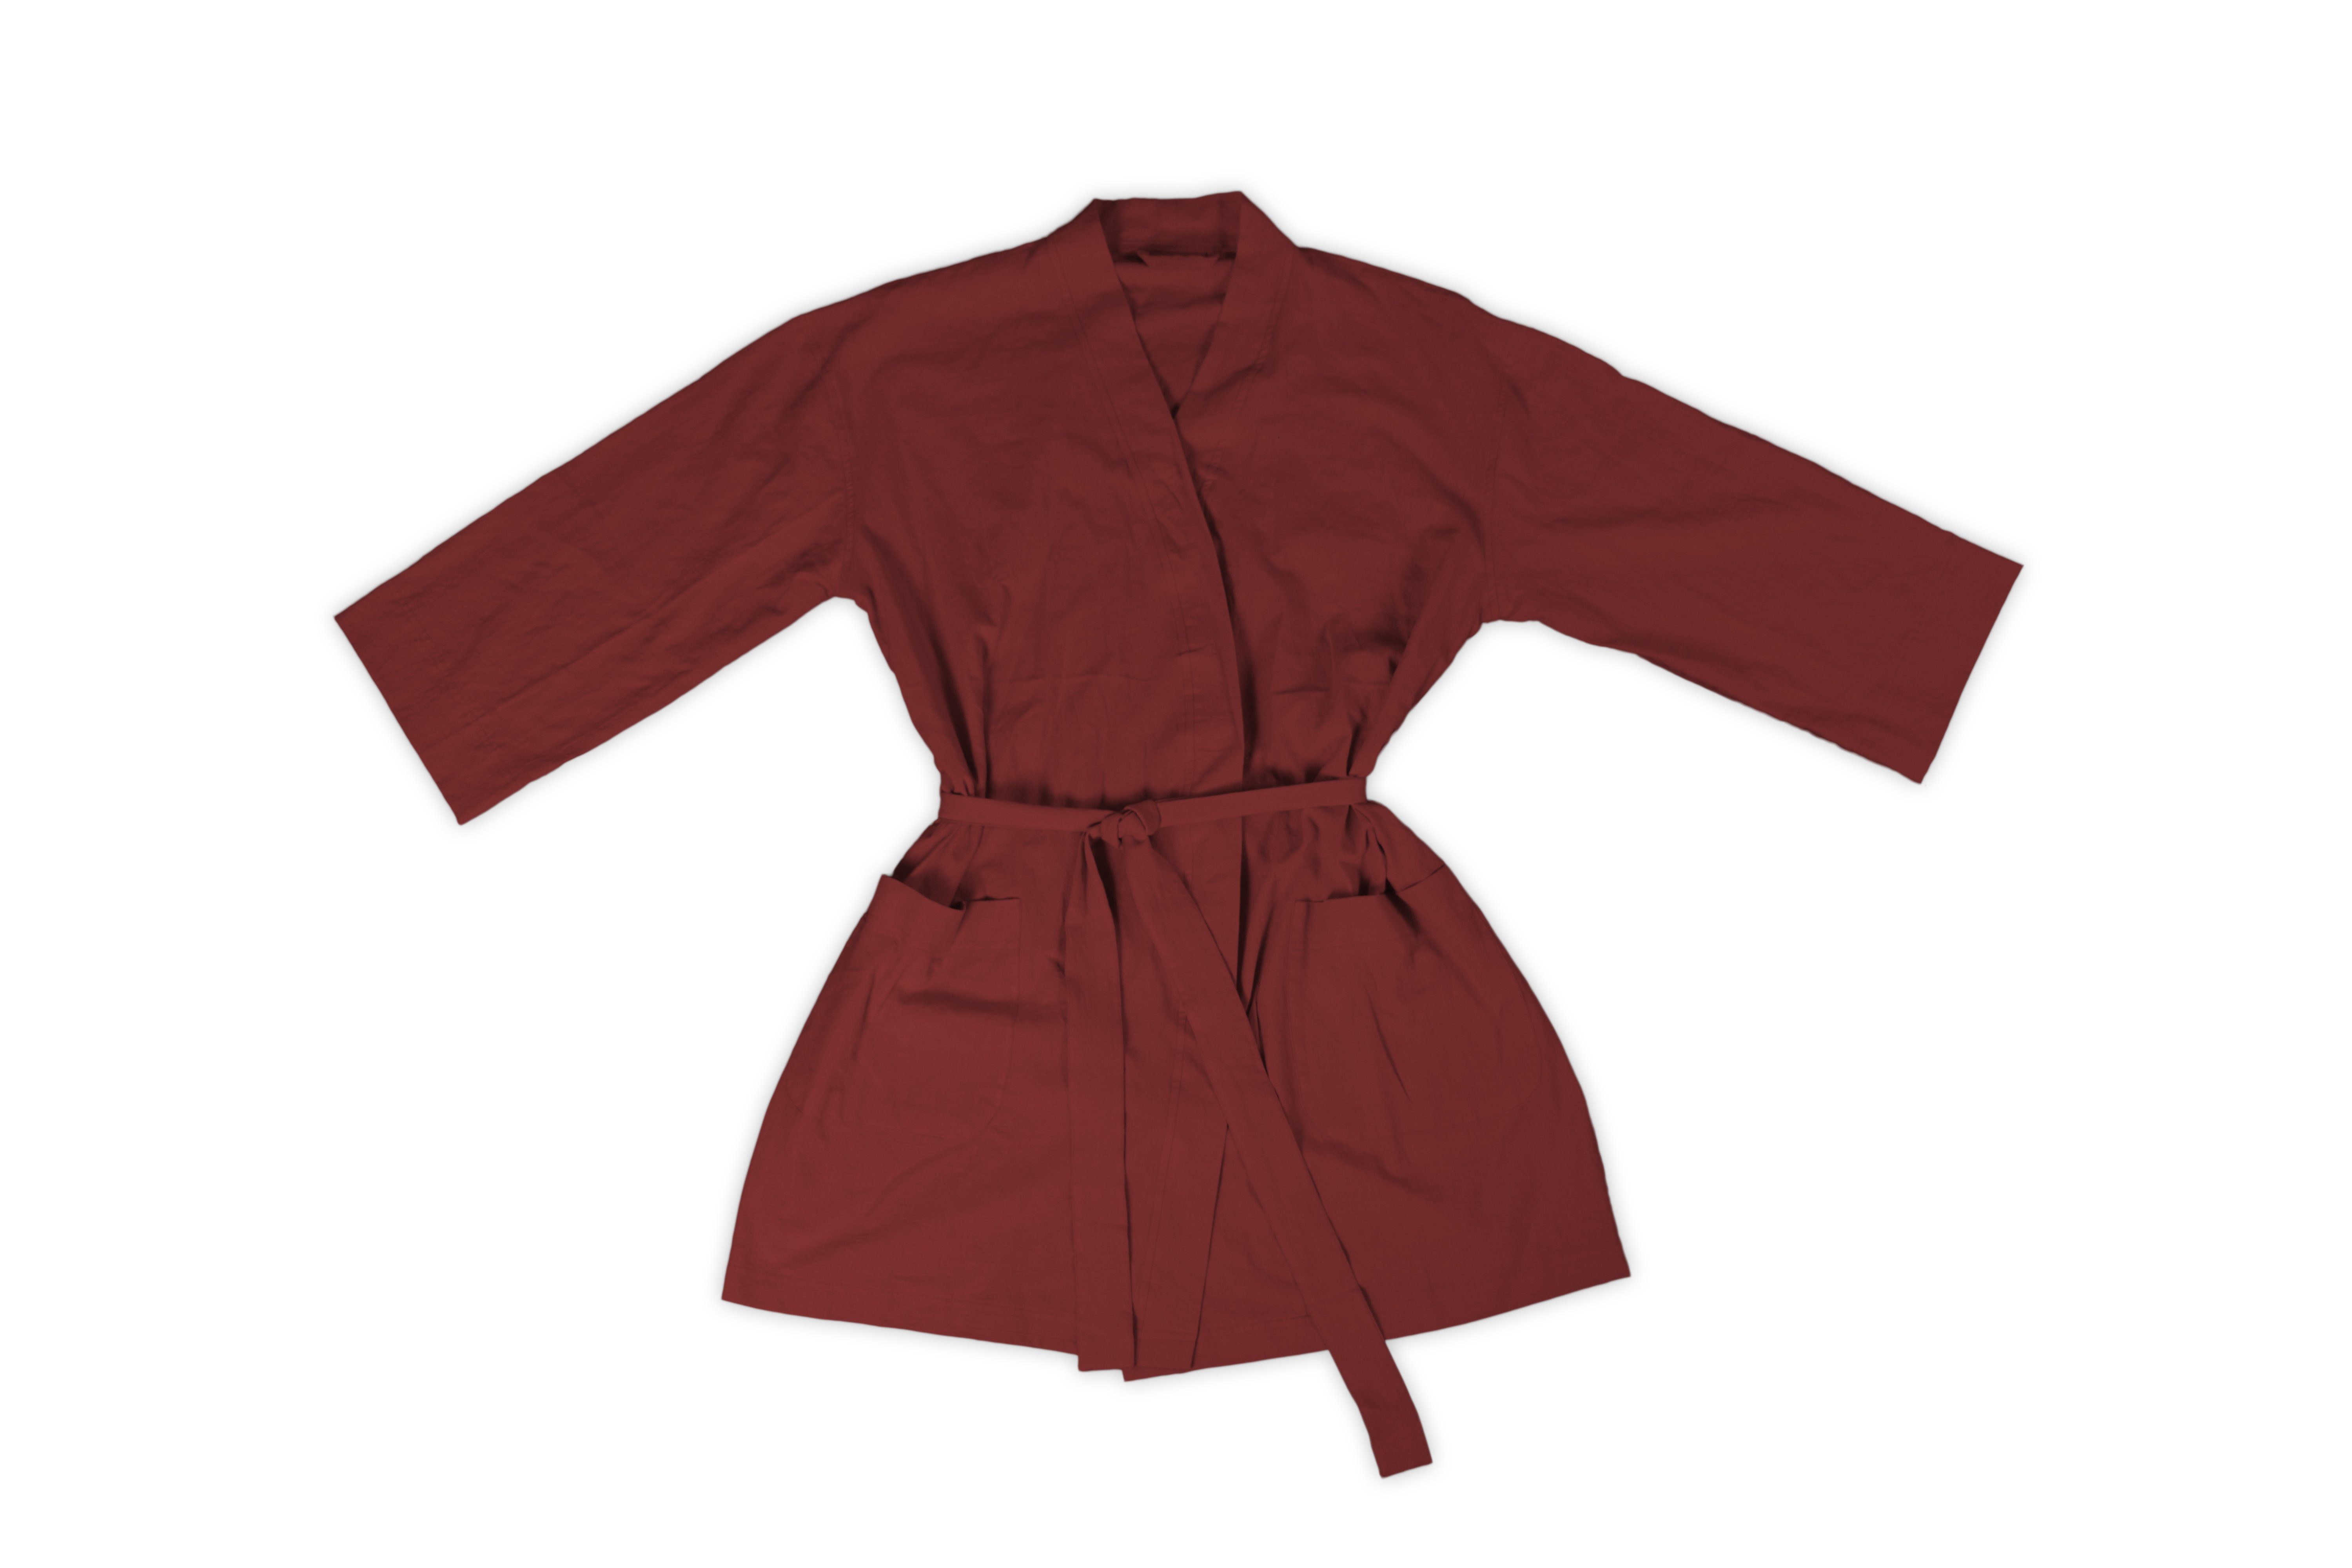 Kimono-Kragen, Gürtel One-Size 36-42, Bademantel Baumwolle, Kimono Granatapfel 100% Lissabon jilda-tex Kimono